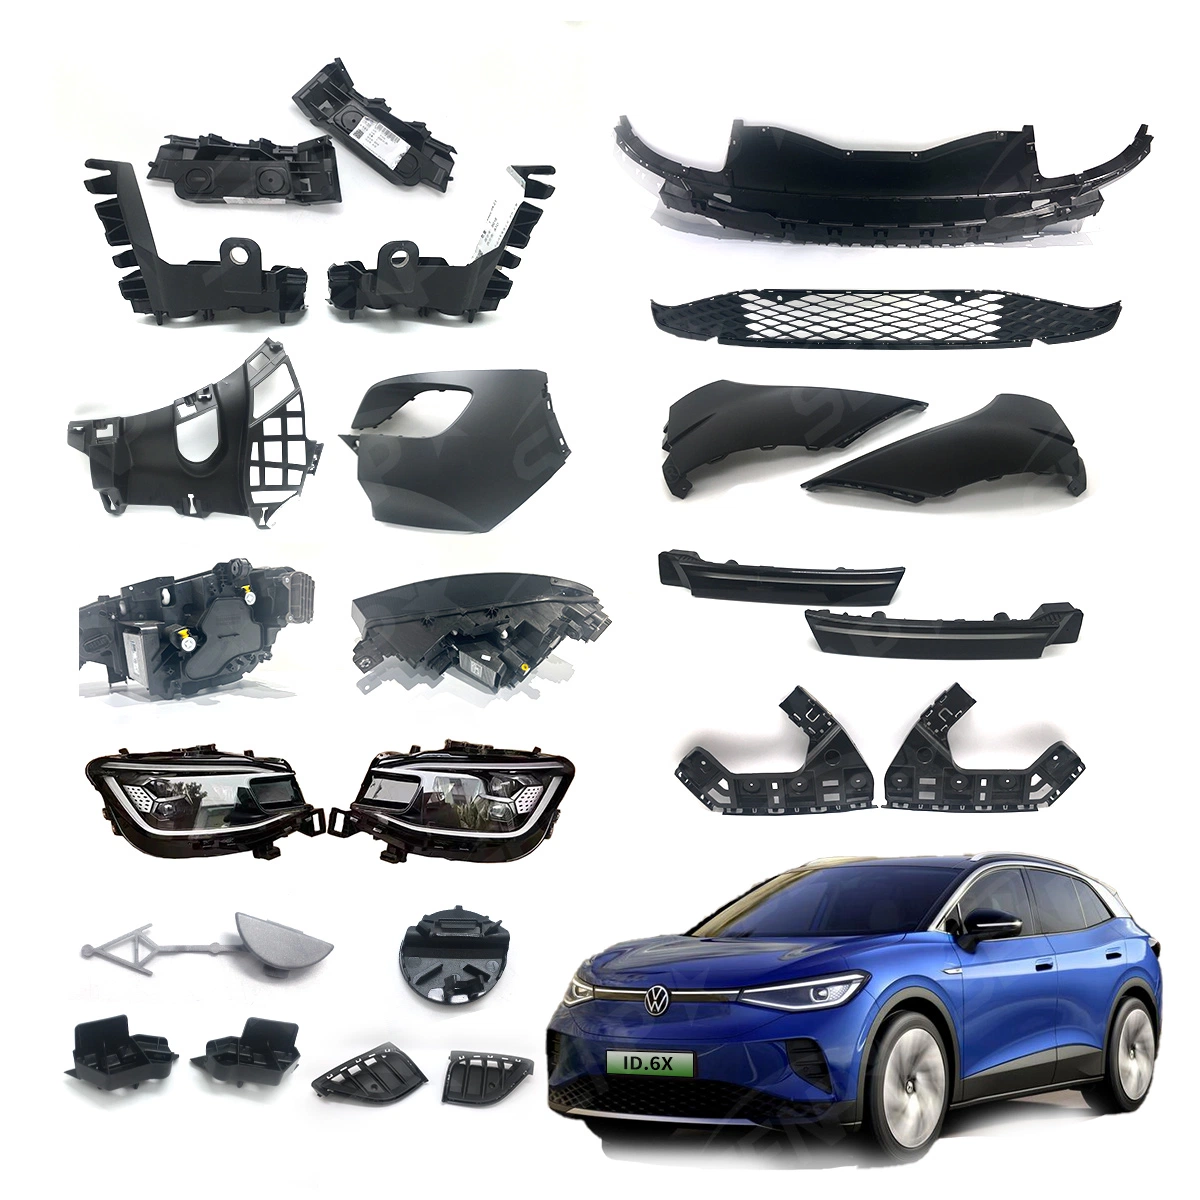 Corps de la qualité d'origine Senp Kit de système de pièces auto approprié pour les véhicules électriques Volkswagen : ID4, ID6, voiture électrique Auto Parts